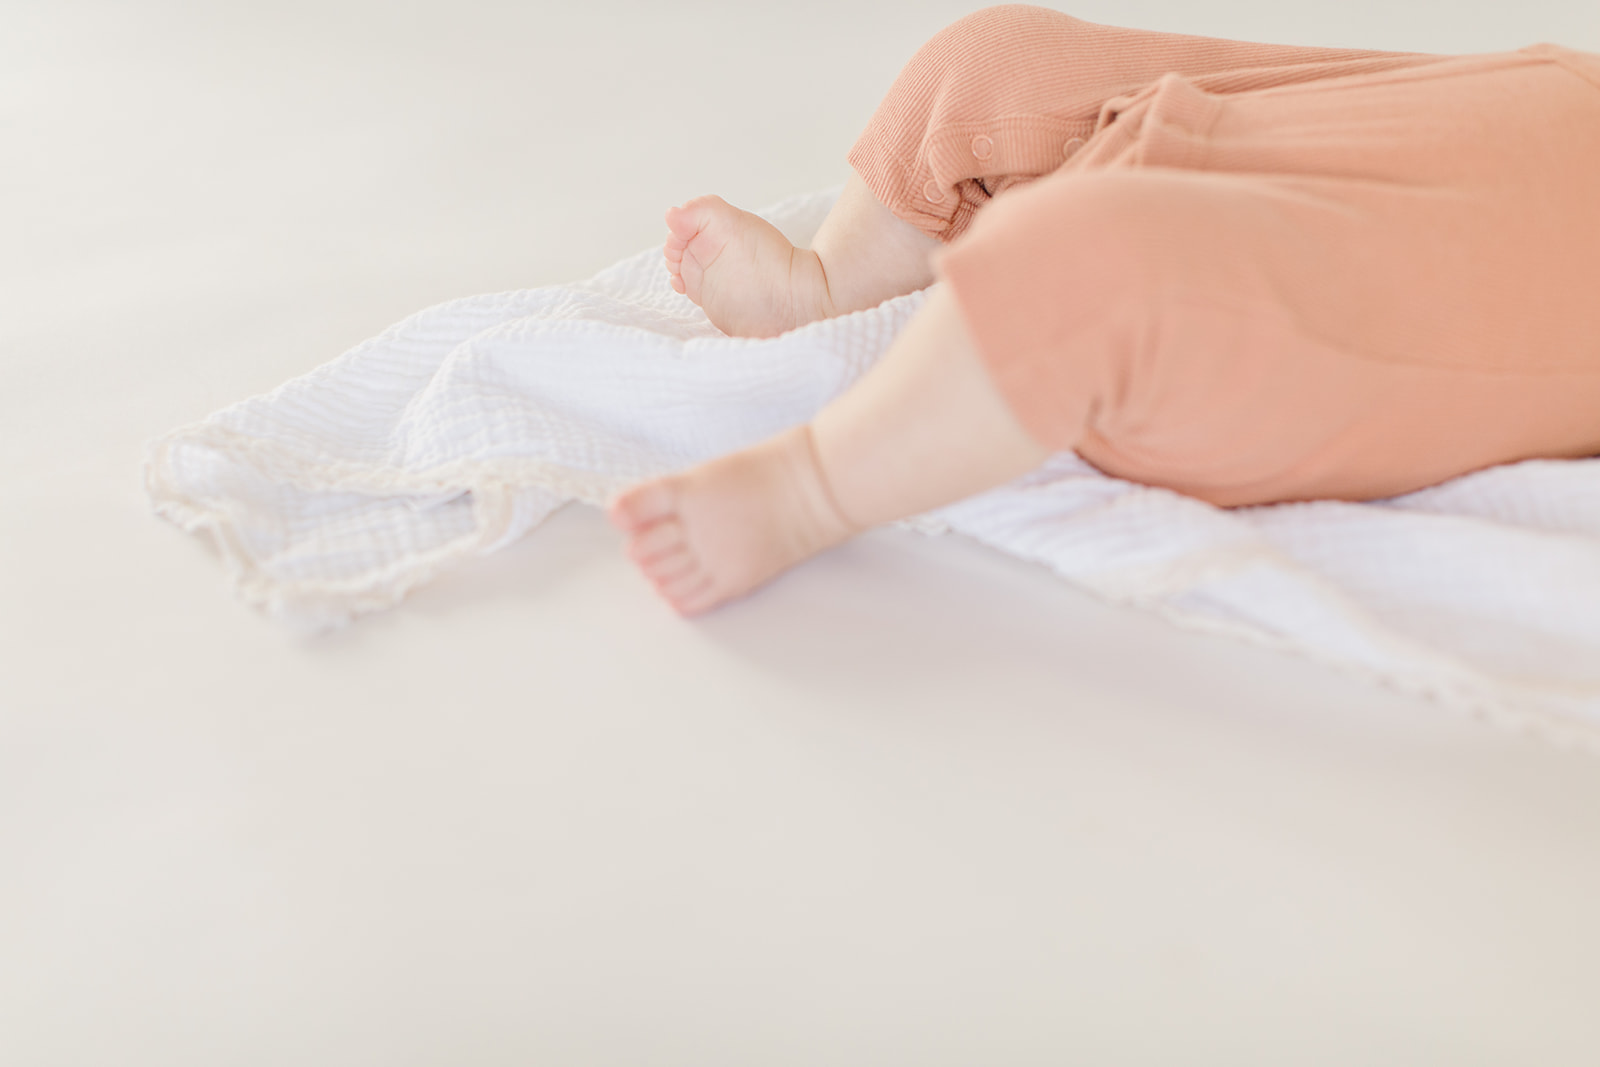 newborn baby in an orange onesie lays on a white blanket in a studio